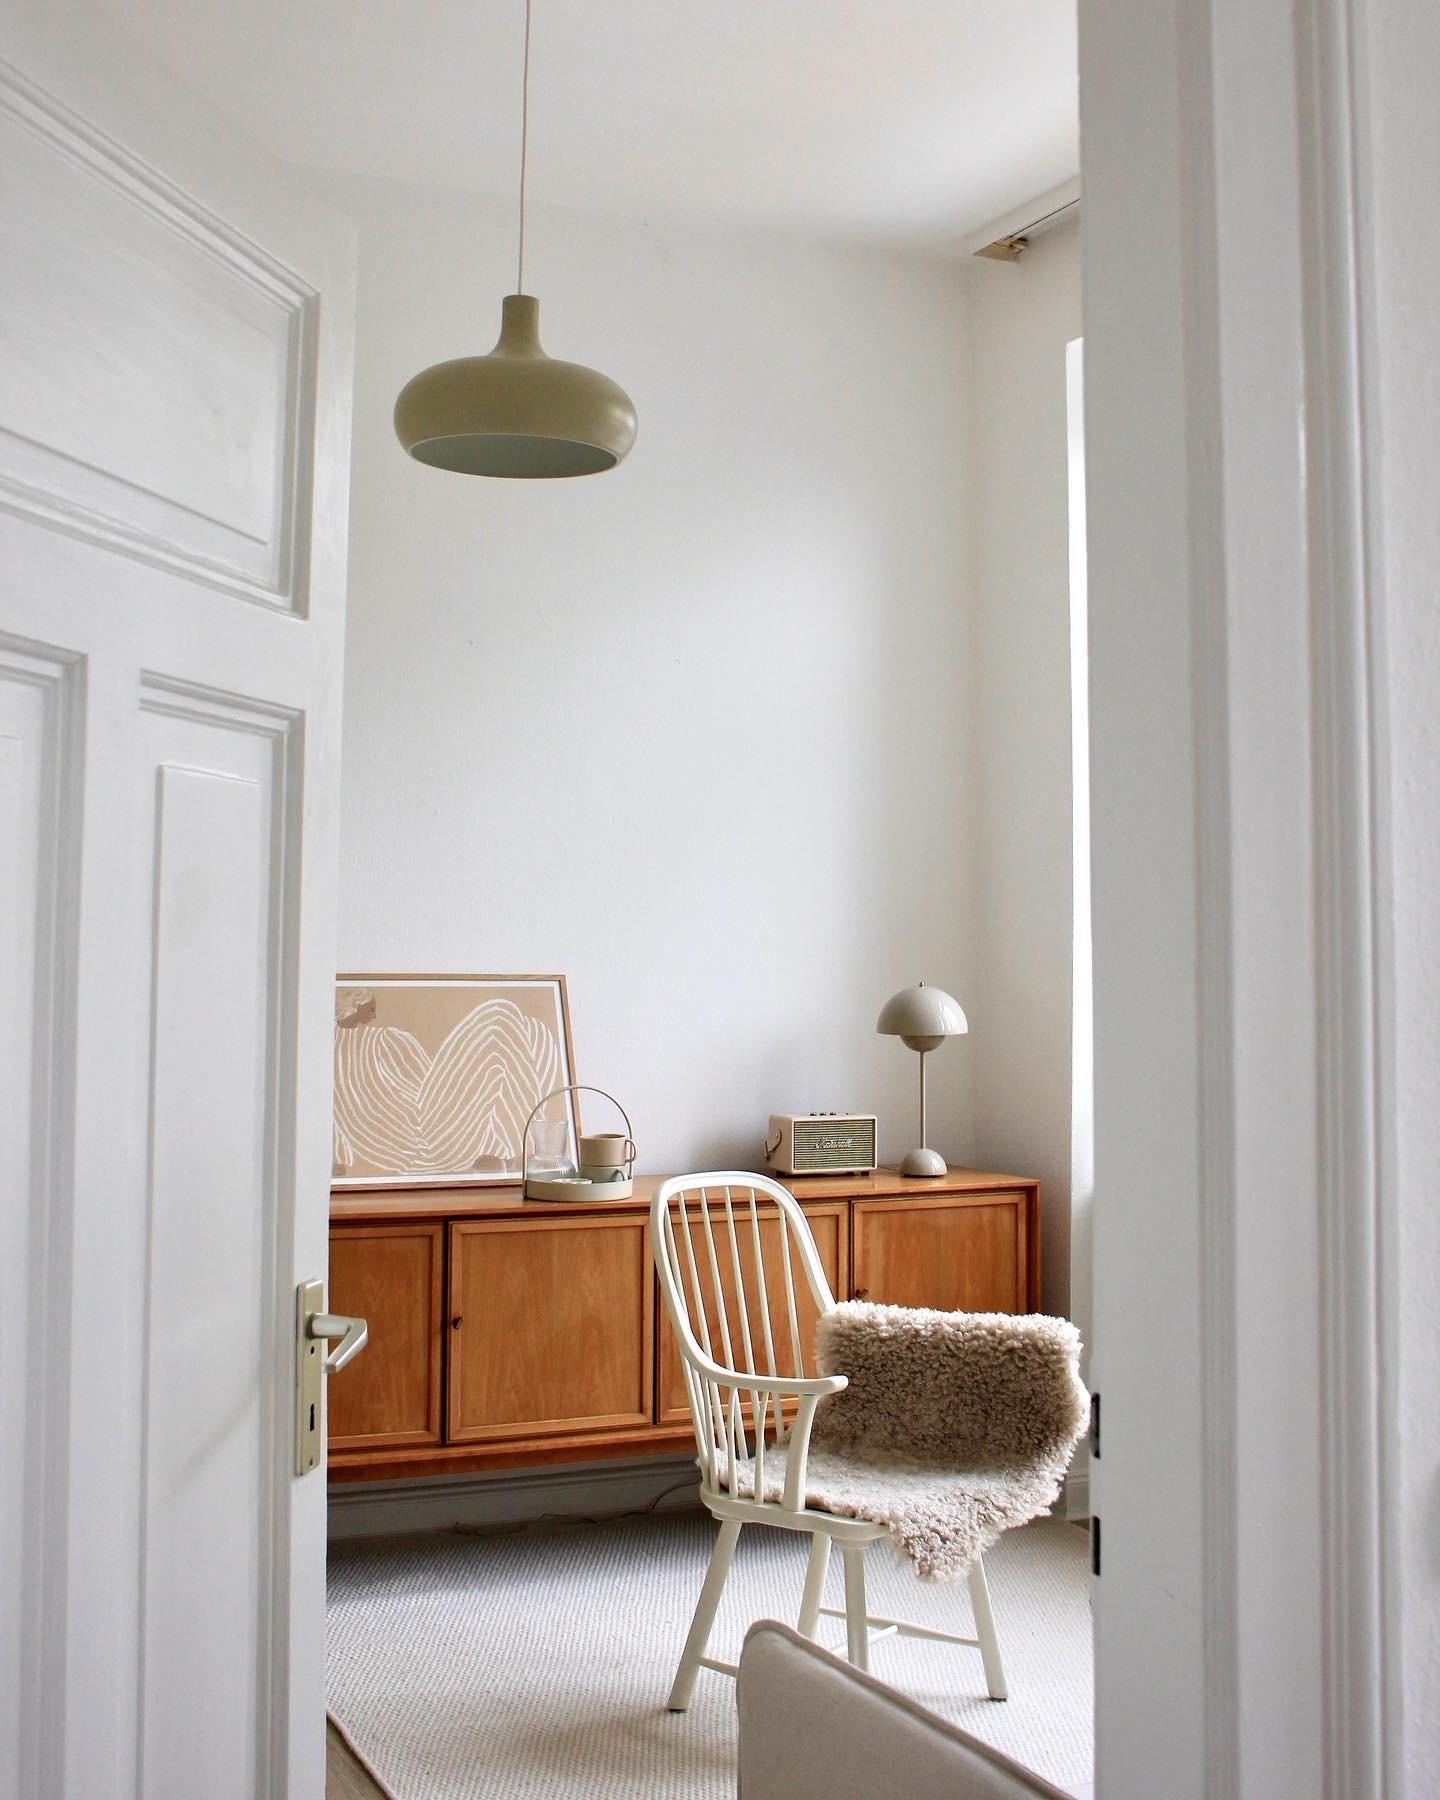 Mein 10€ Flohmarkt Stuhl 🤍 #liebe #sessel #stuhl #wohnzimmer #livingroom #40qm #zuhause #interieur #wohnen #gemütlich